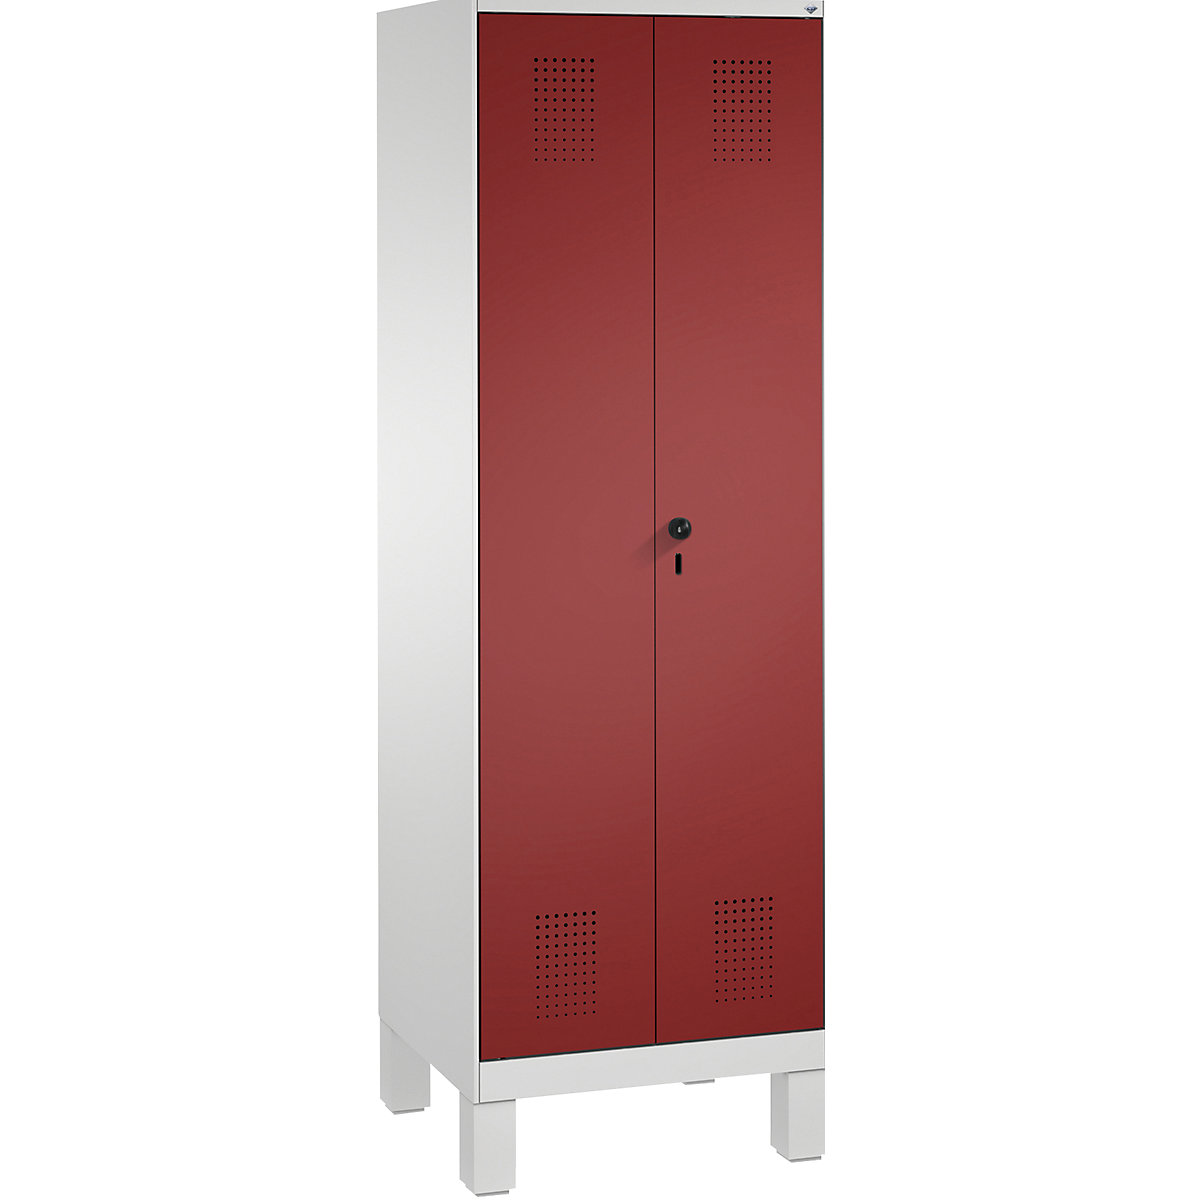 EVOLO takarítószer-/készüléktároló szekrény – C+P, rövidített válaszfal, 6 akasztó, rekeszek 2 x 300 mm, lábakkal, világosszürke / rubinvörös-17